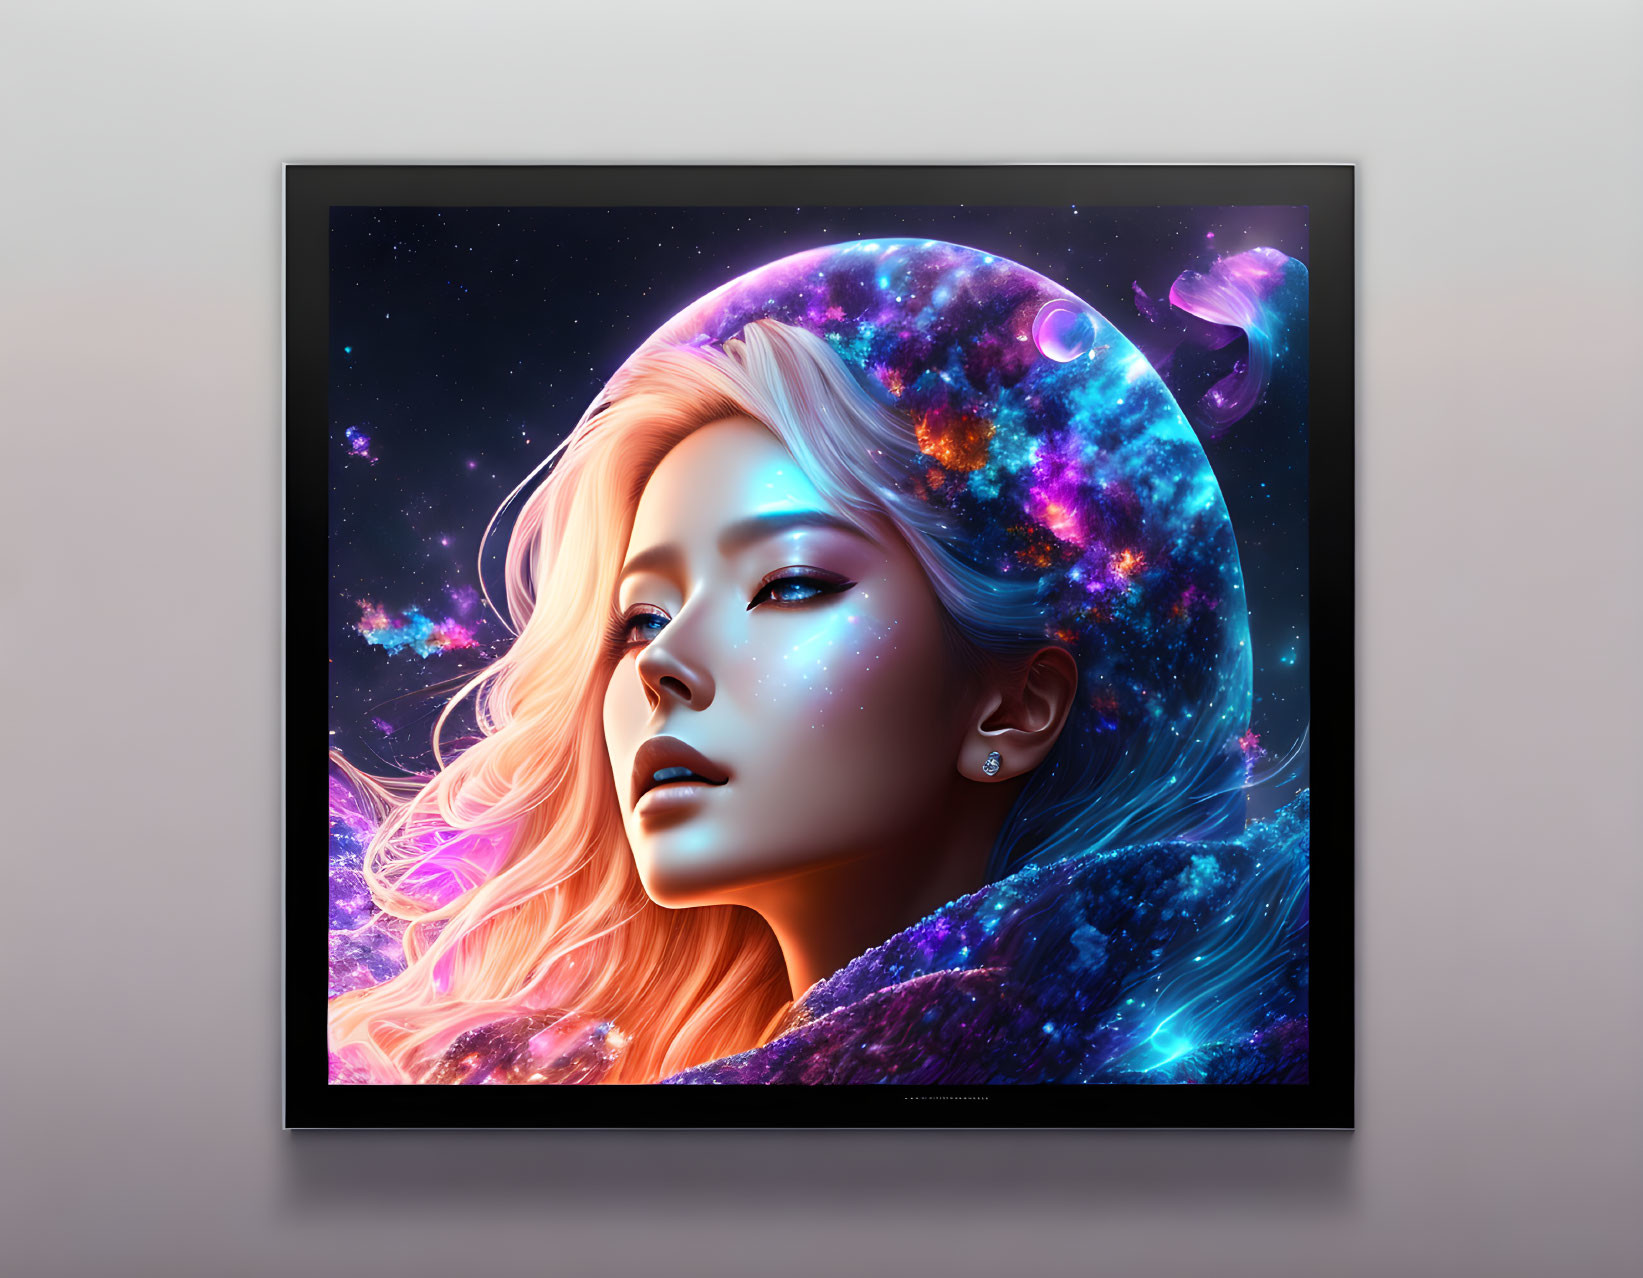 Galaxy-themed digital portrait of a woman in black frame